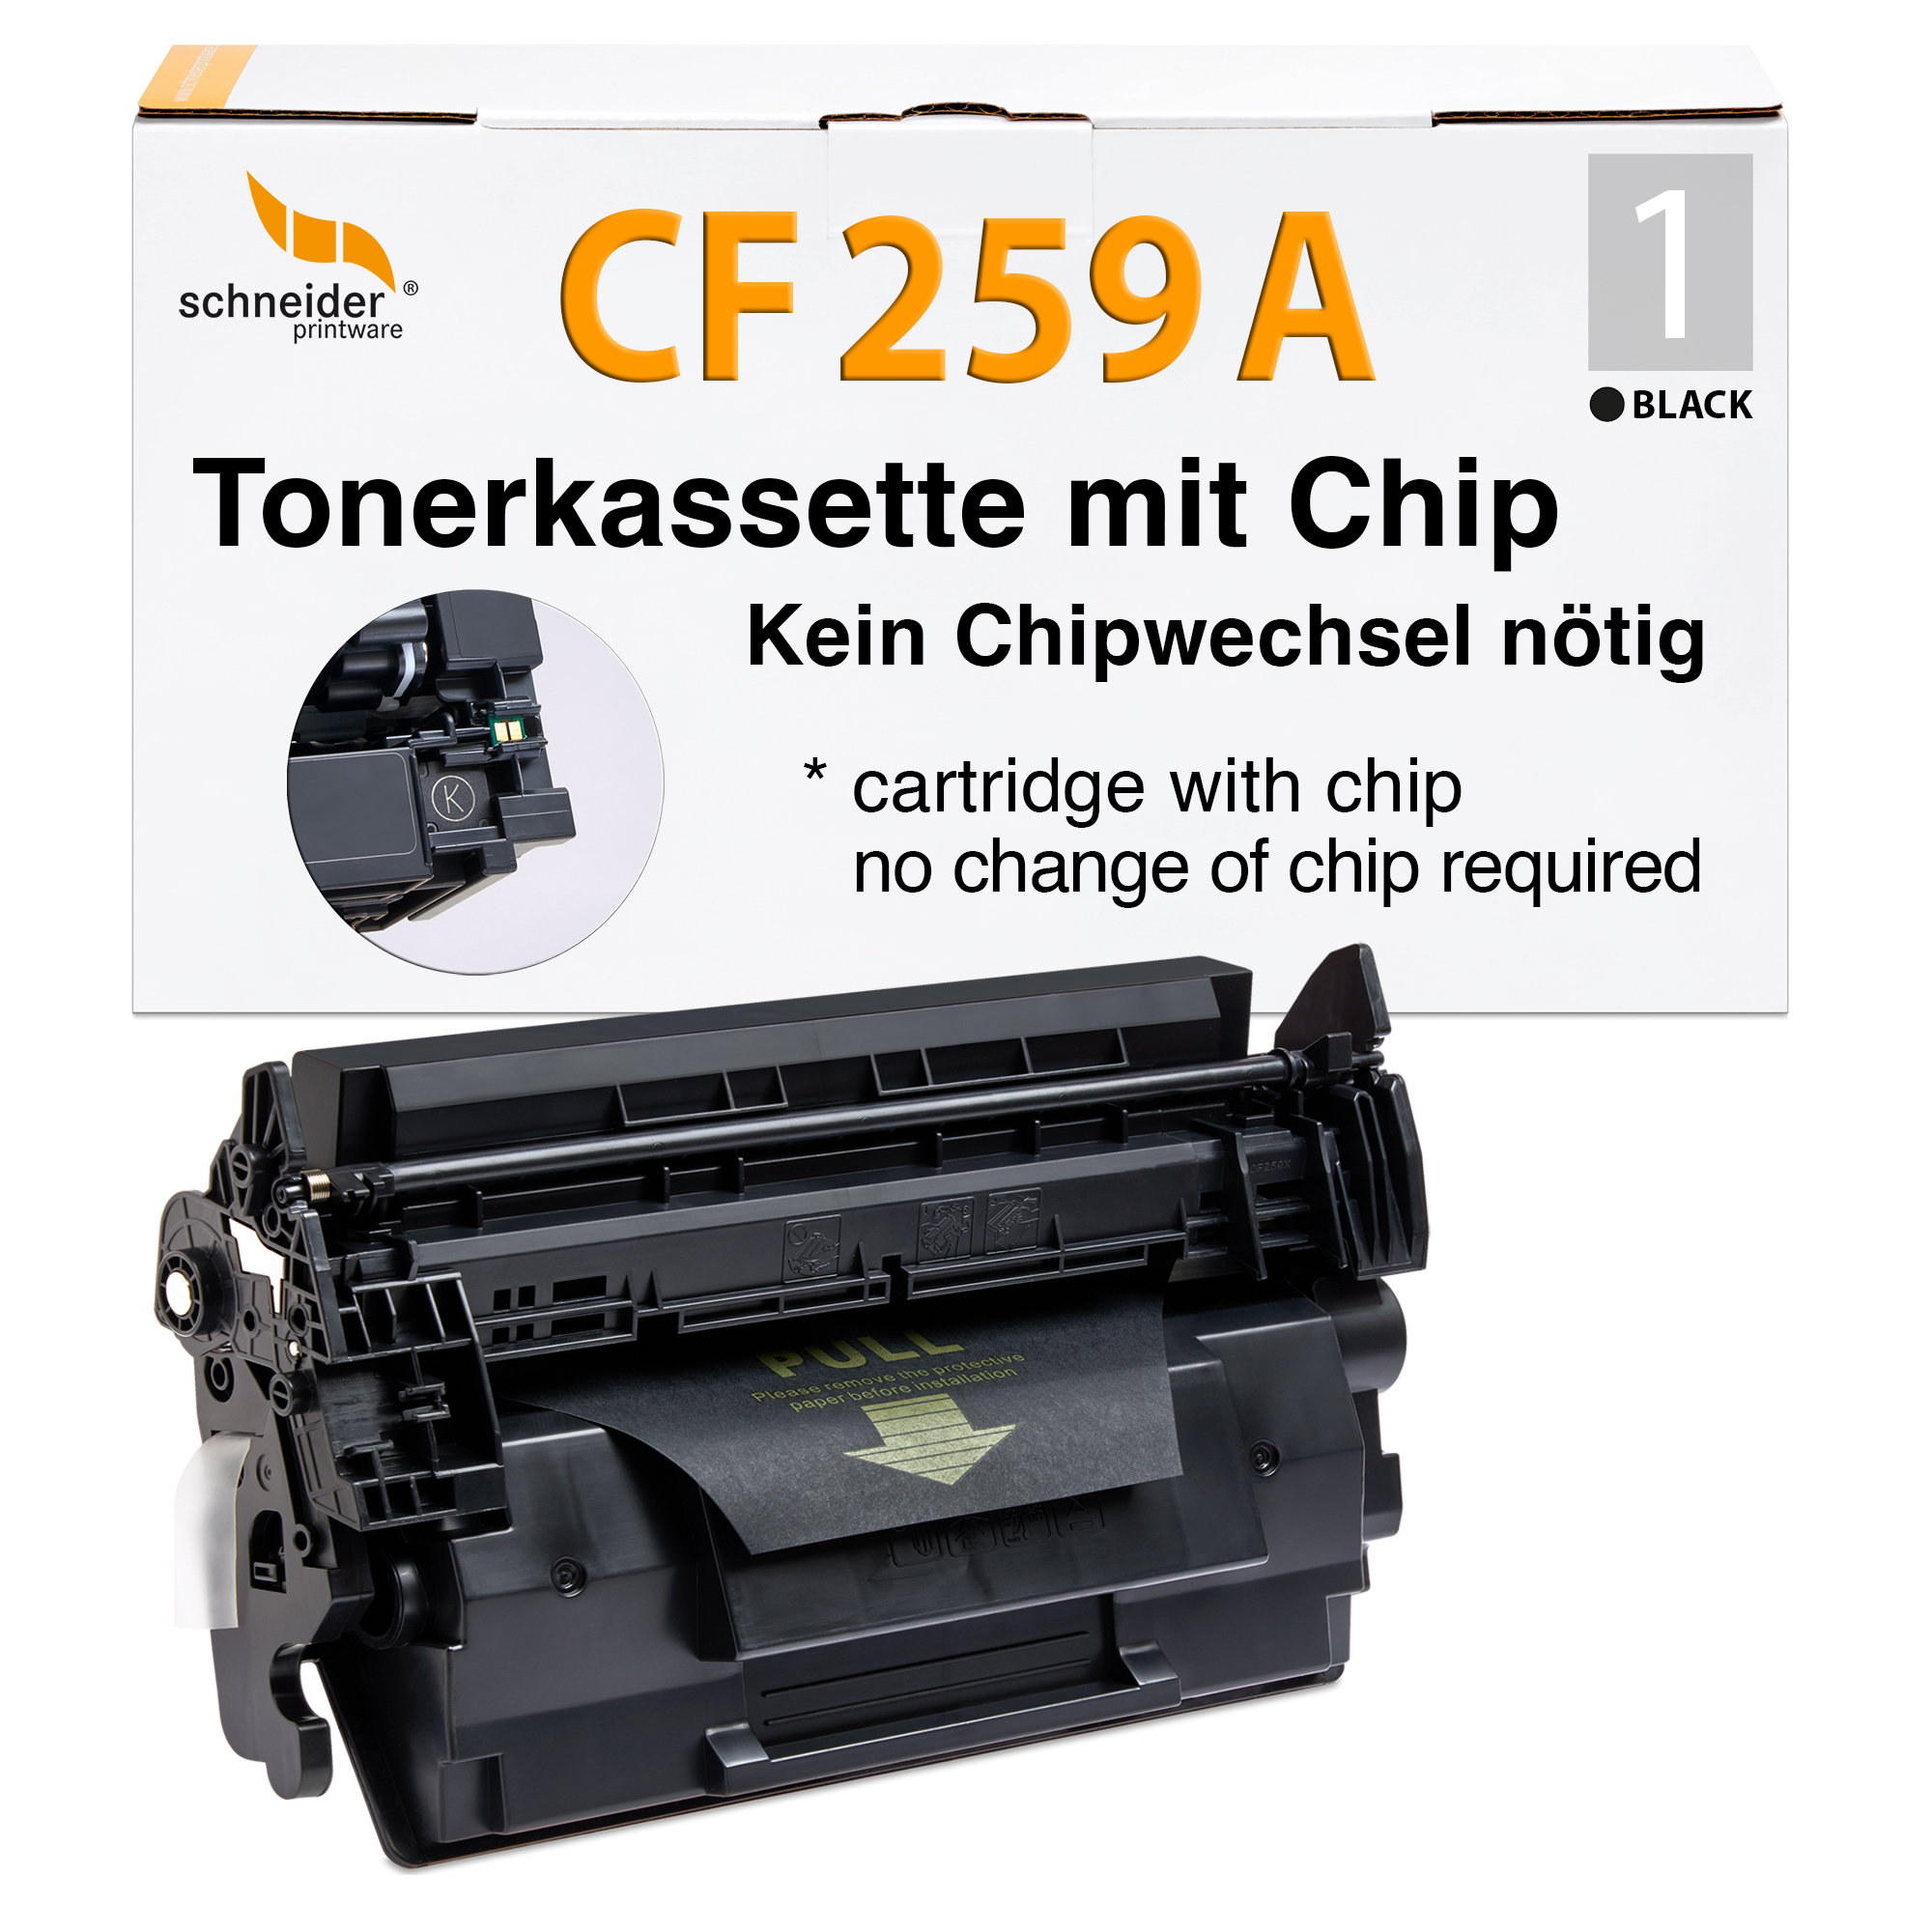 Schneiderprintware Toner MIT CHIP ersetzt HP 59A CF259A